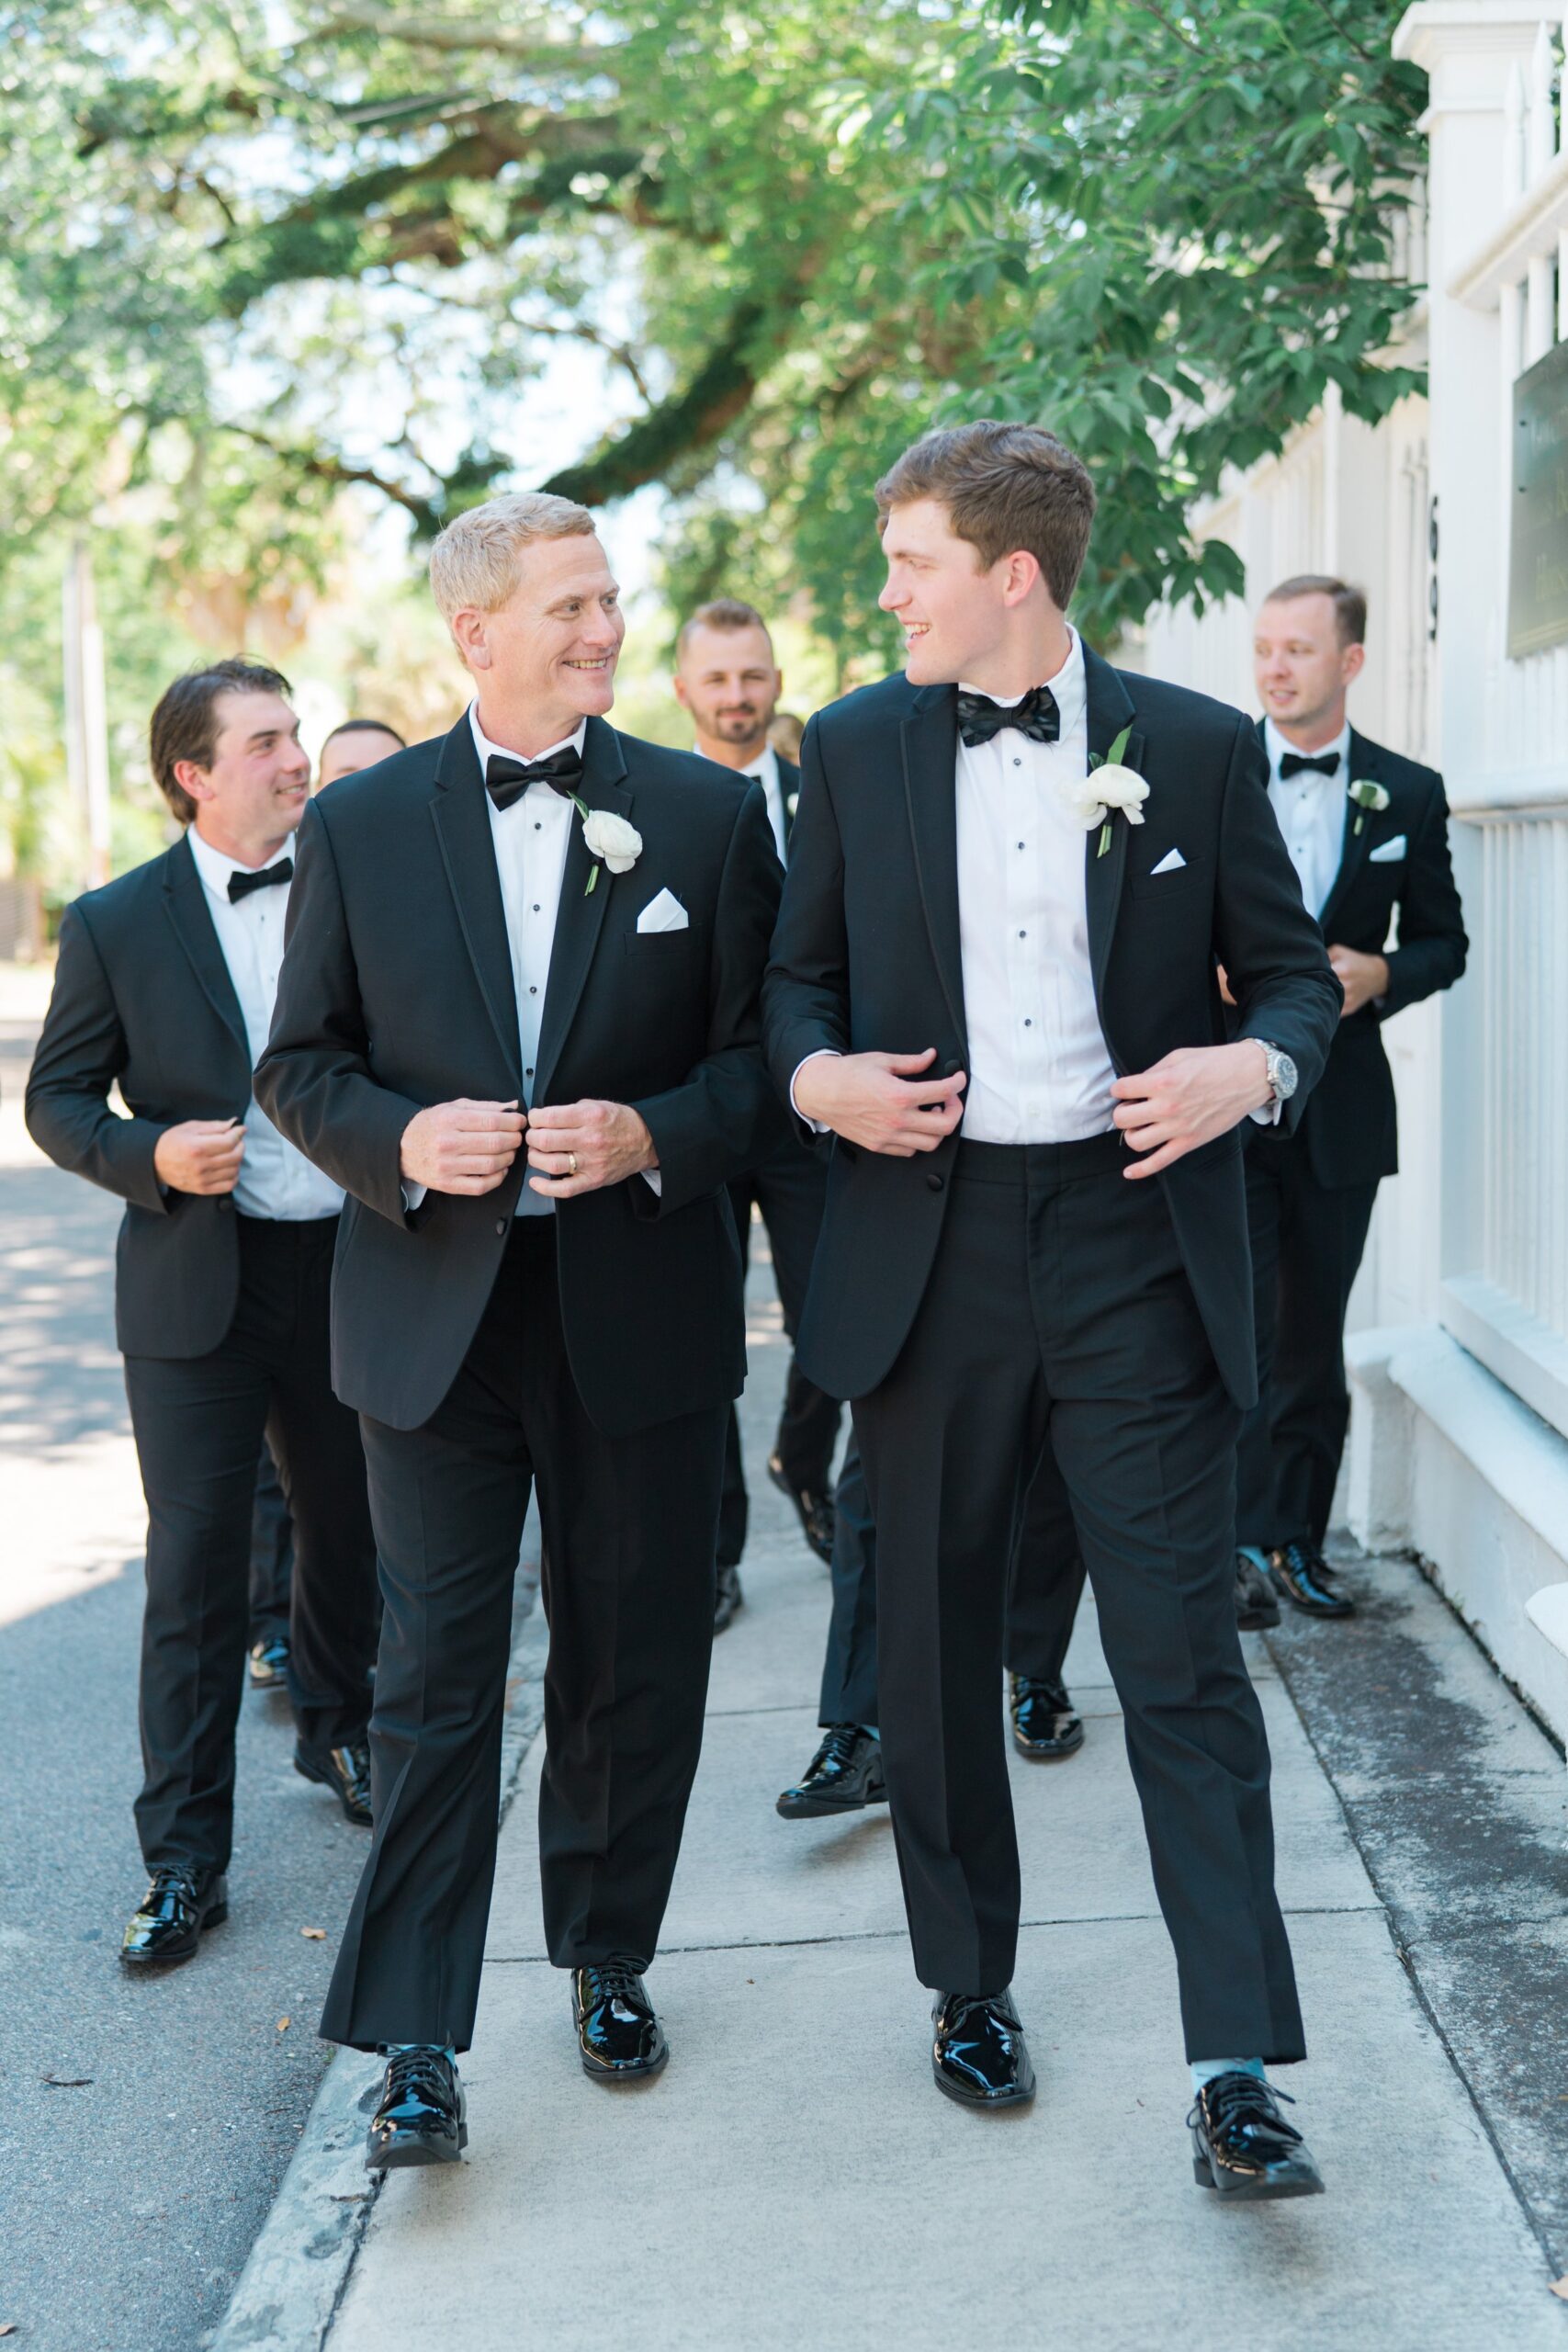 Groom walking with groomsmen. Black tuxedo with light blue socks.